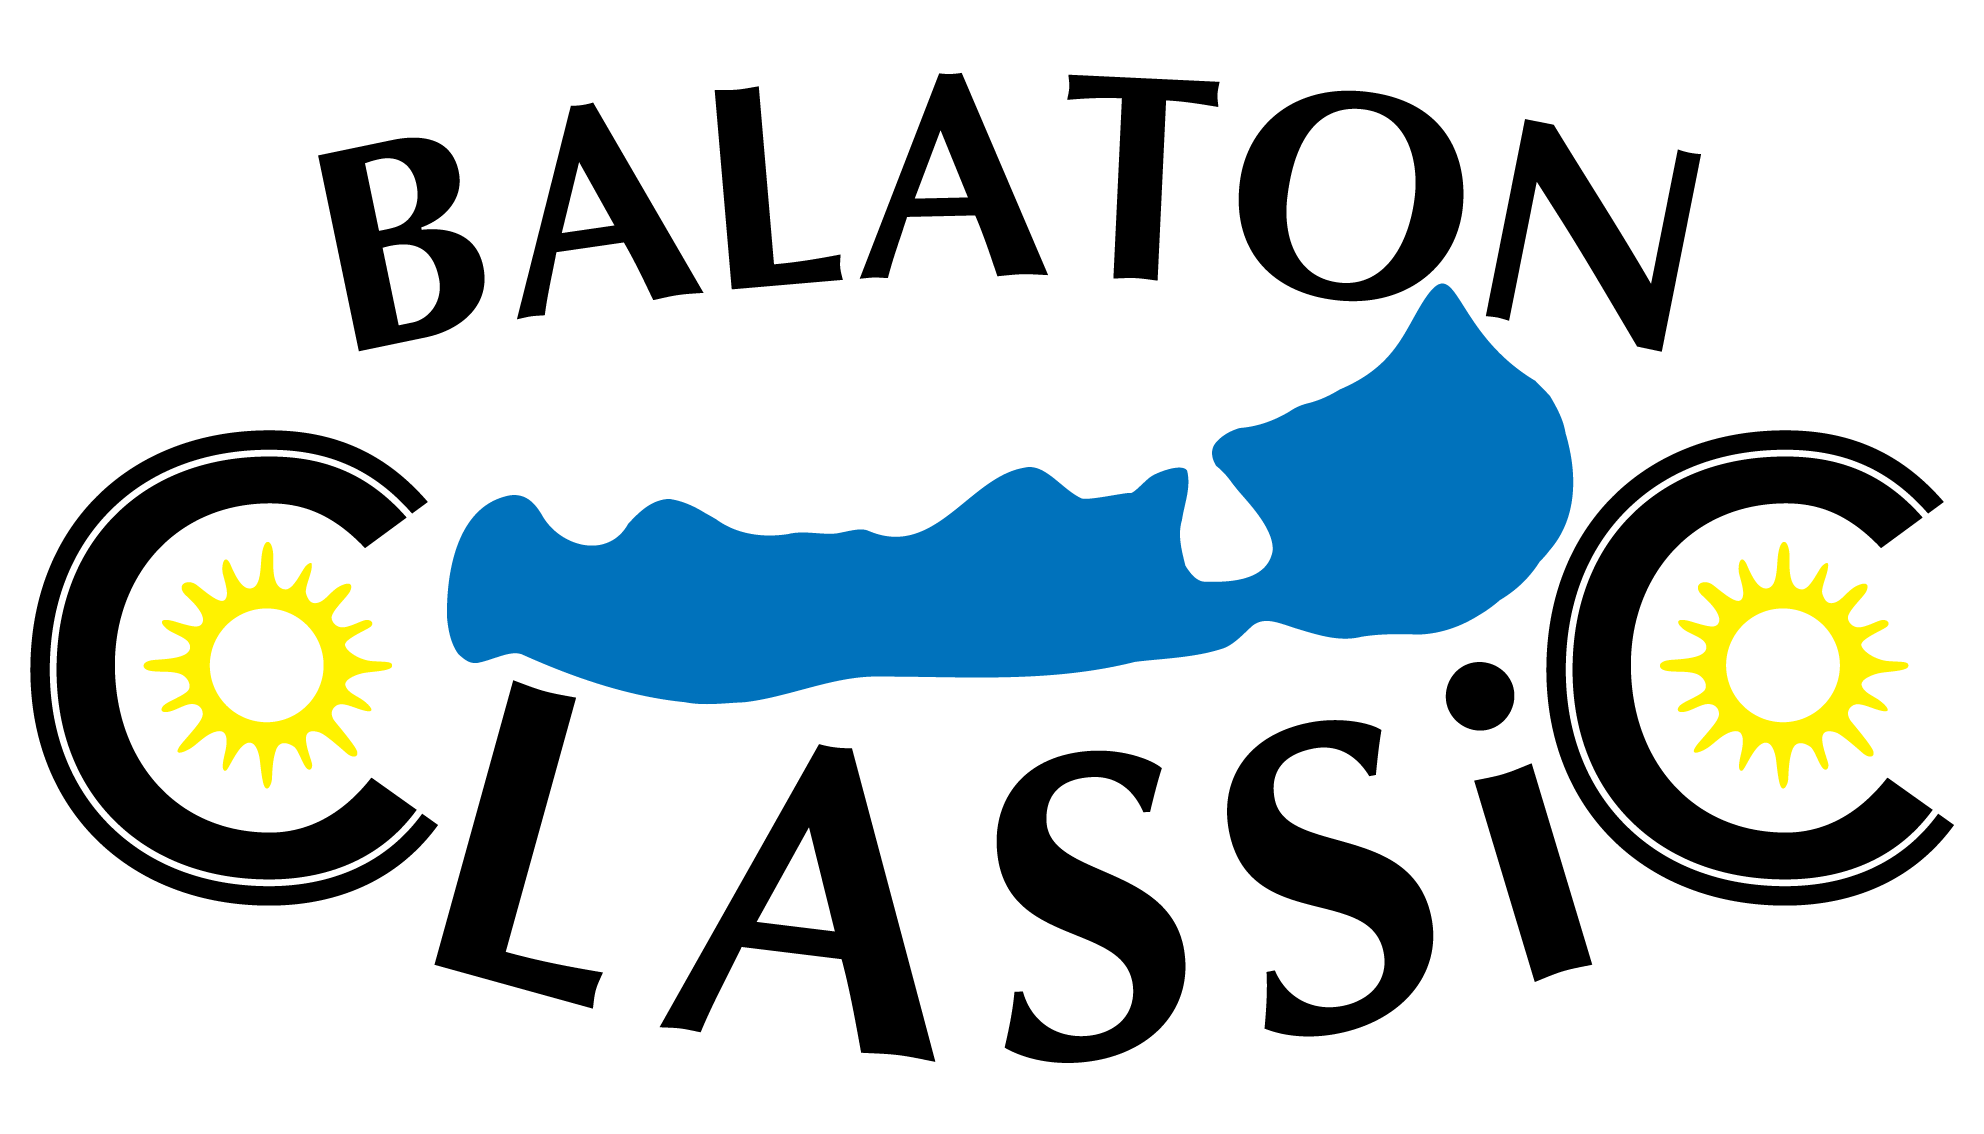 balaton-classic_OK